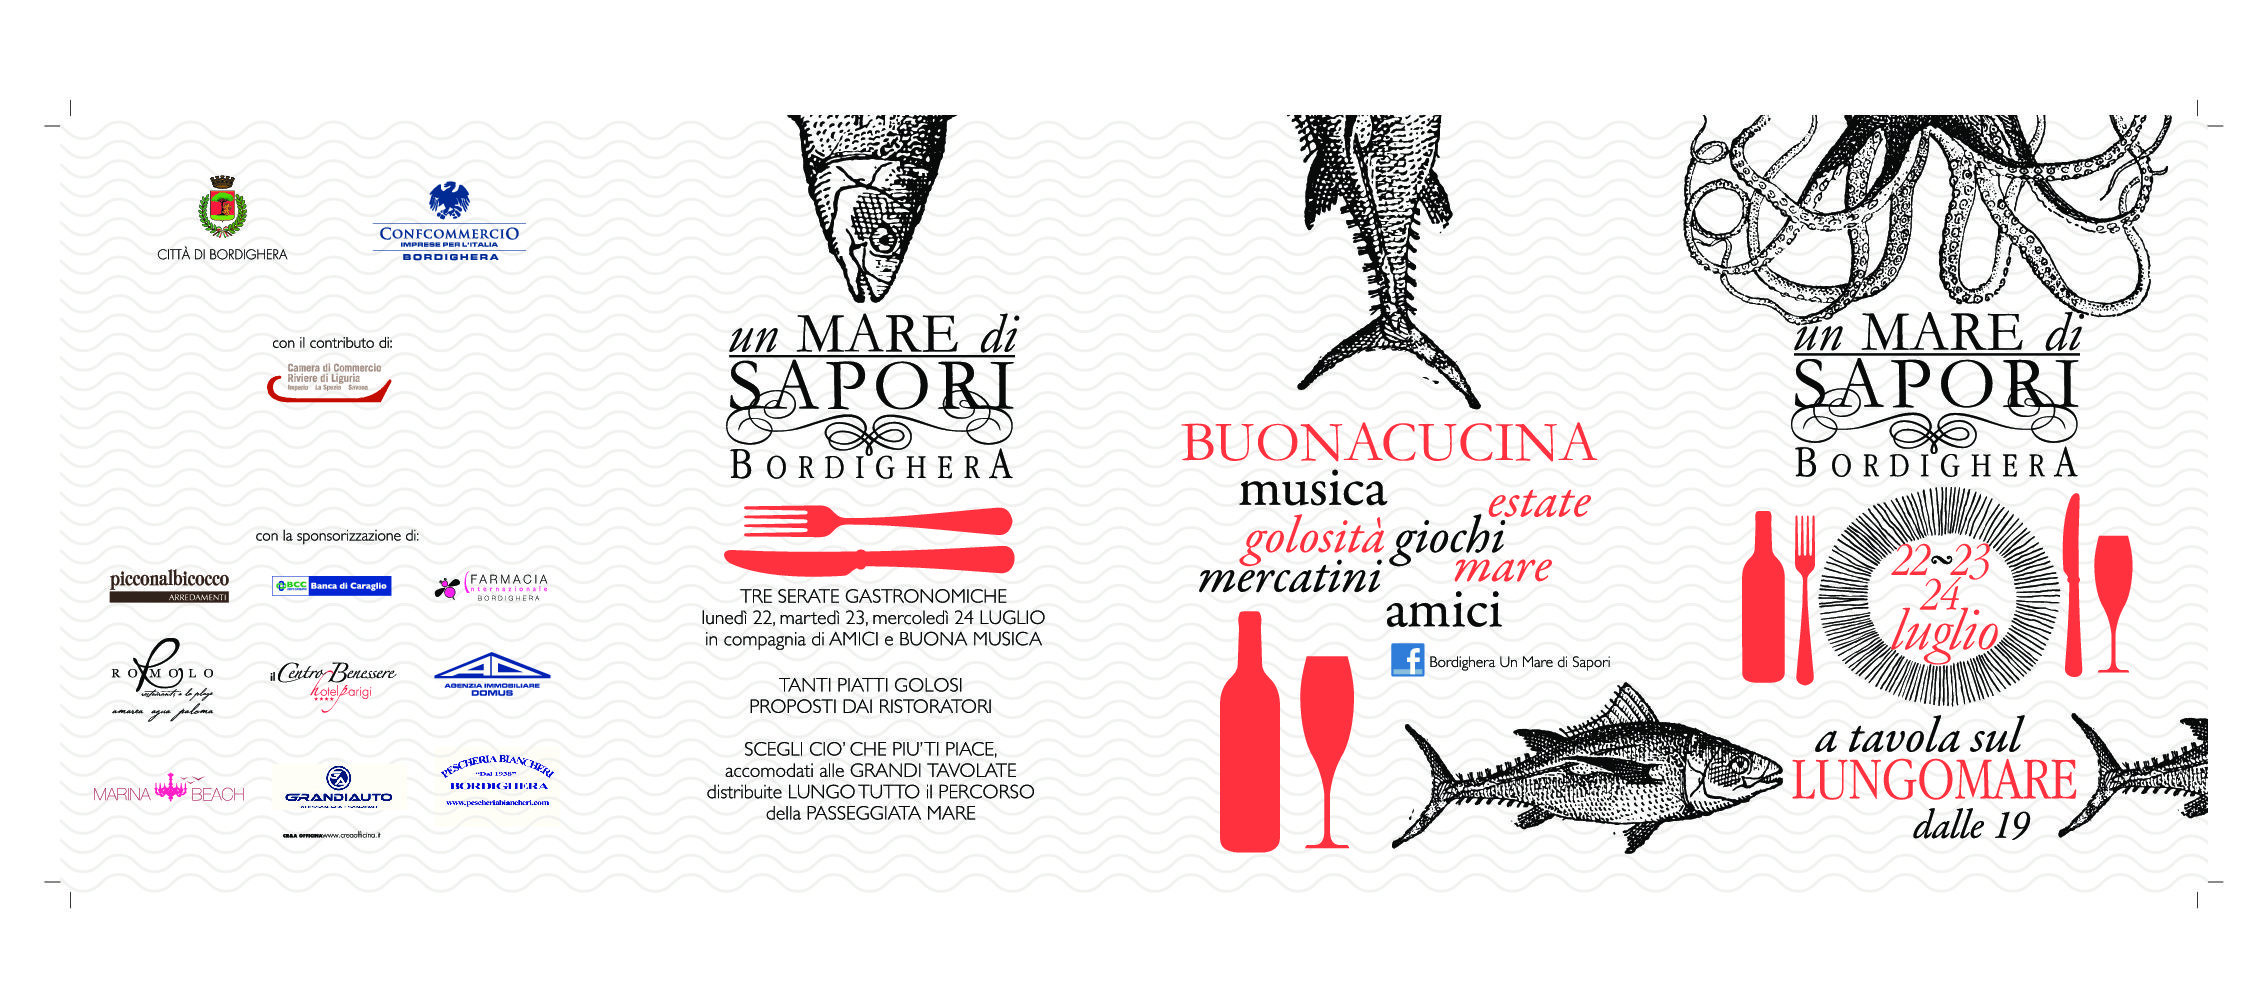 Un Mare di Sapori, a Bordighera torna con la 6a edizione la festa del buon cibo e del divertimento